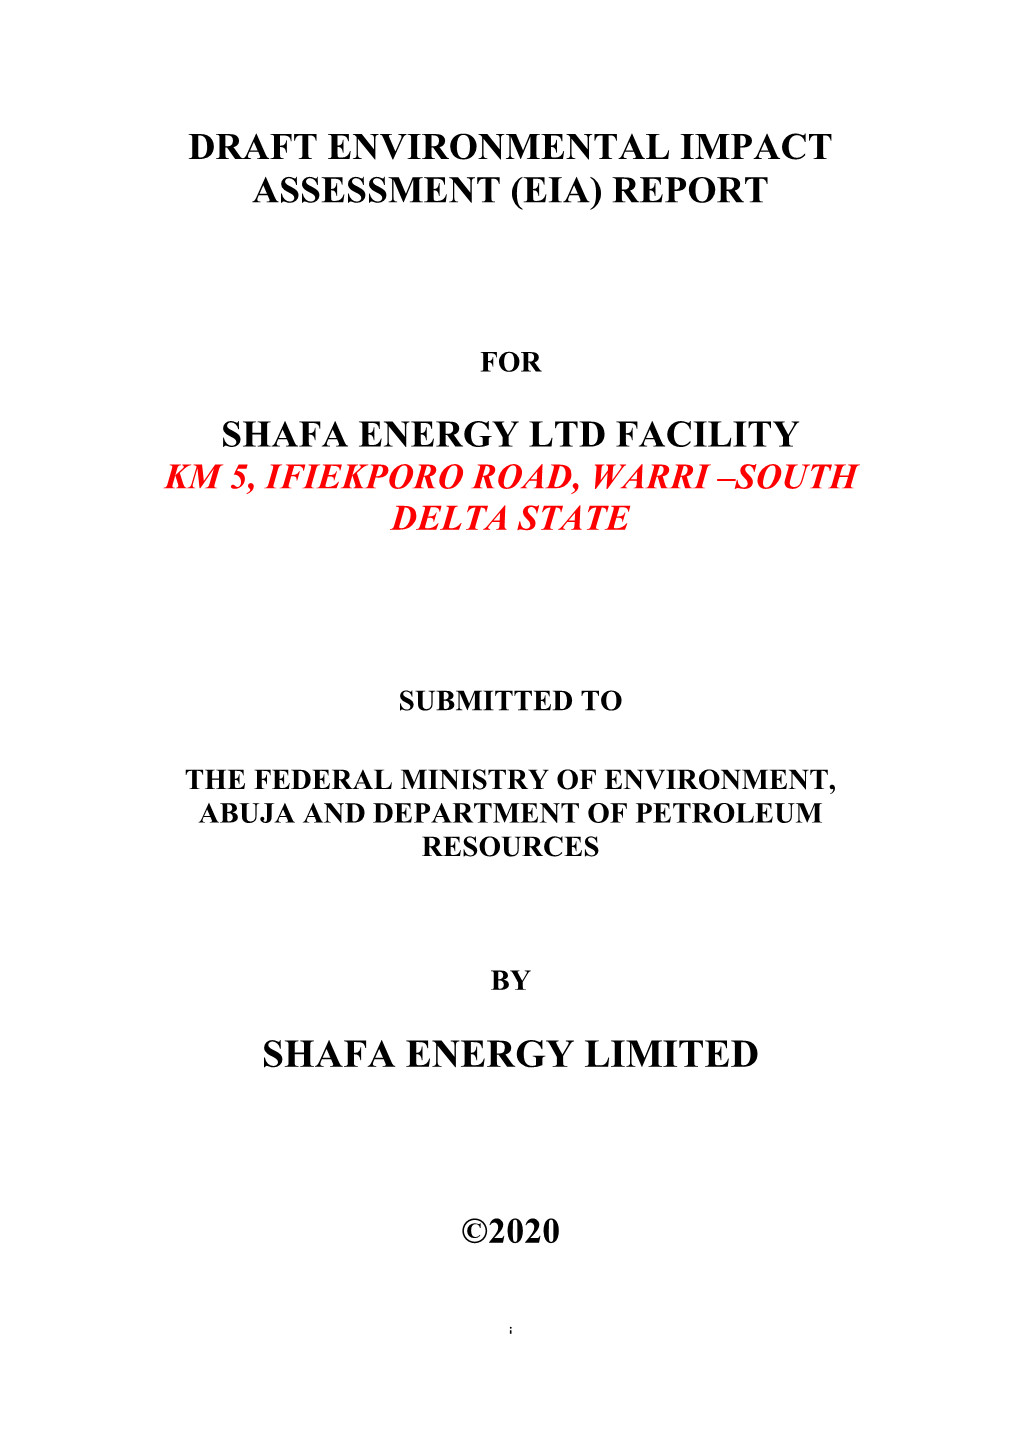 Shafa Energy Limited